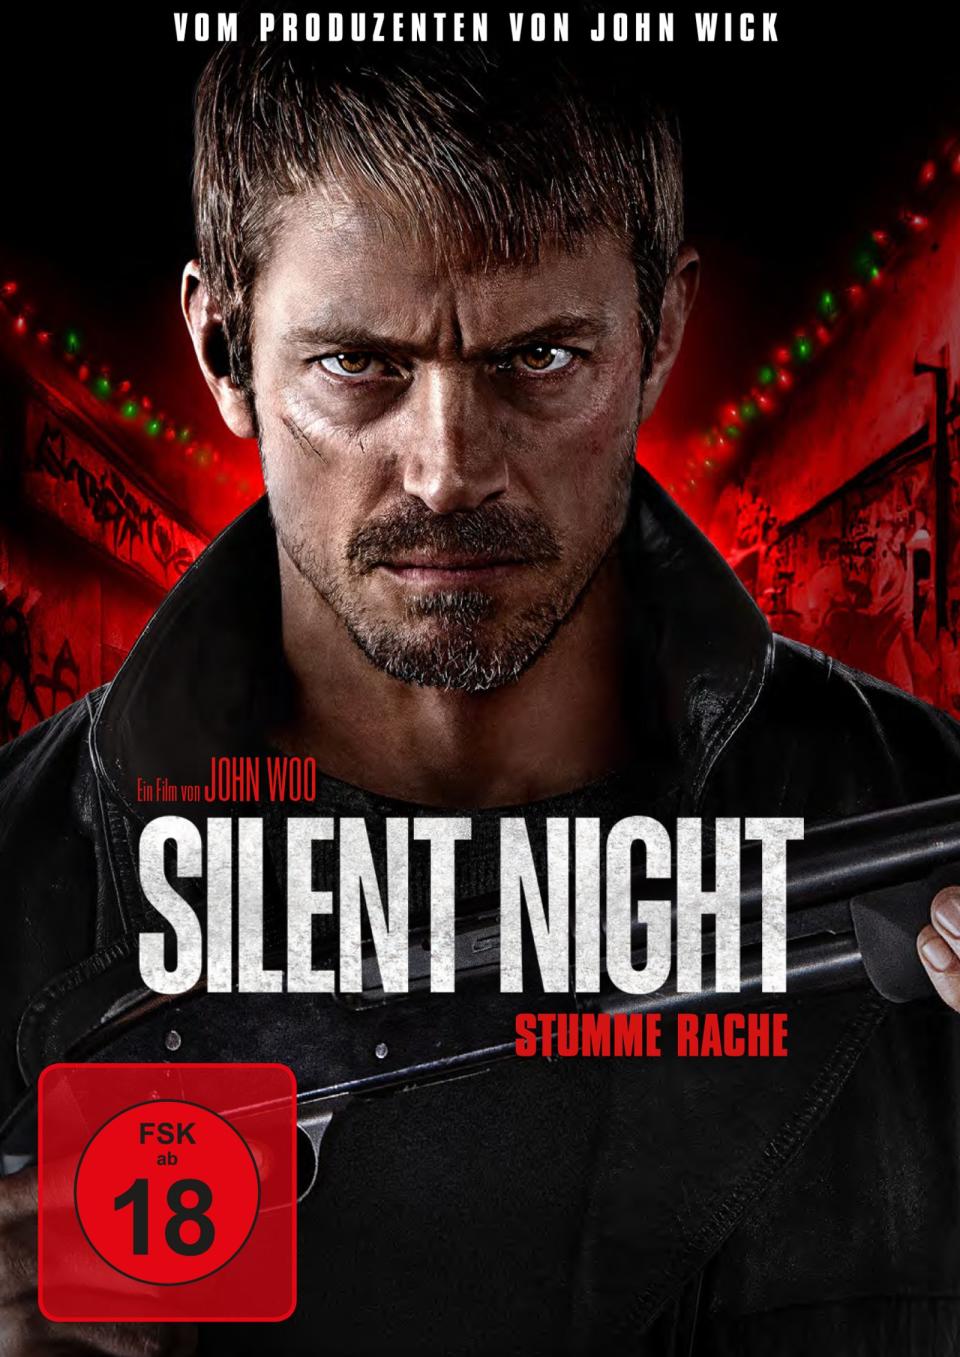 "Silent Night - Stumme Rache" ist der erste große amerikanische Film von Kultregisseur John Woo seit 20 Jahren. (Bild: Leonine)